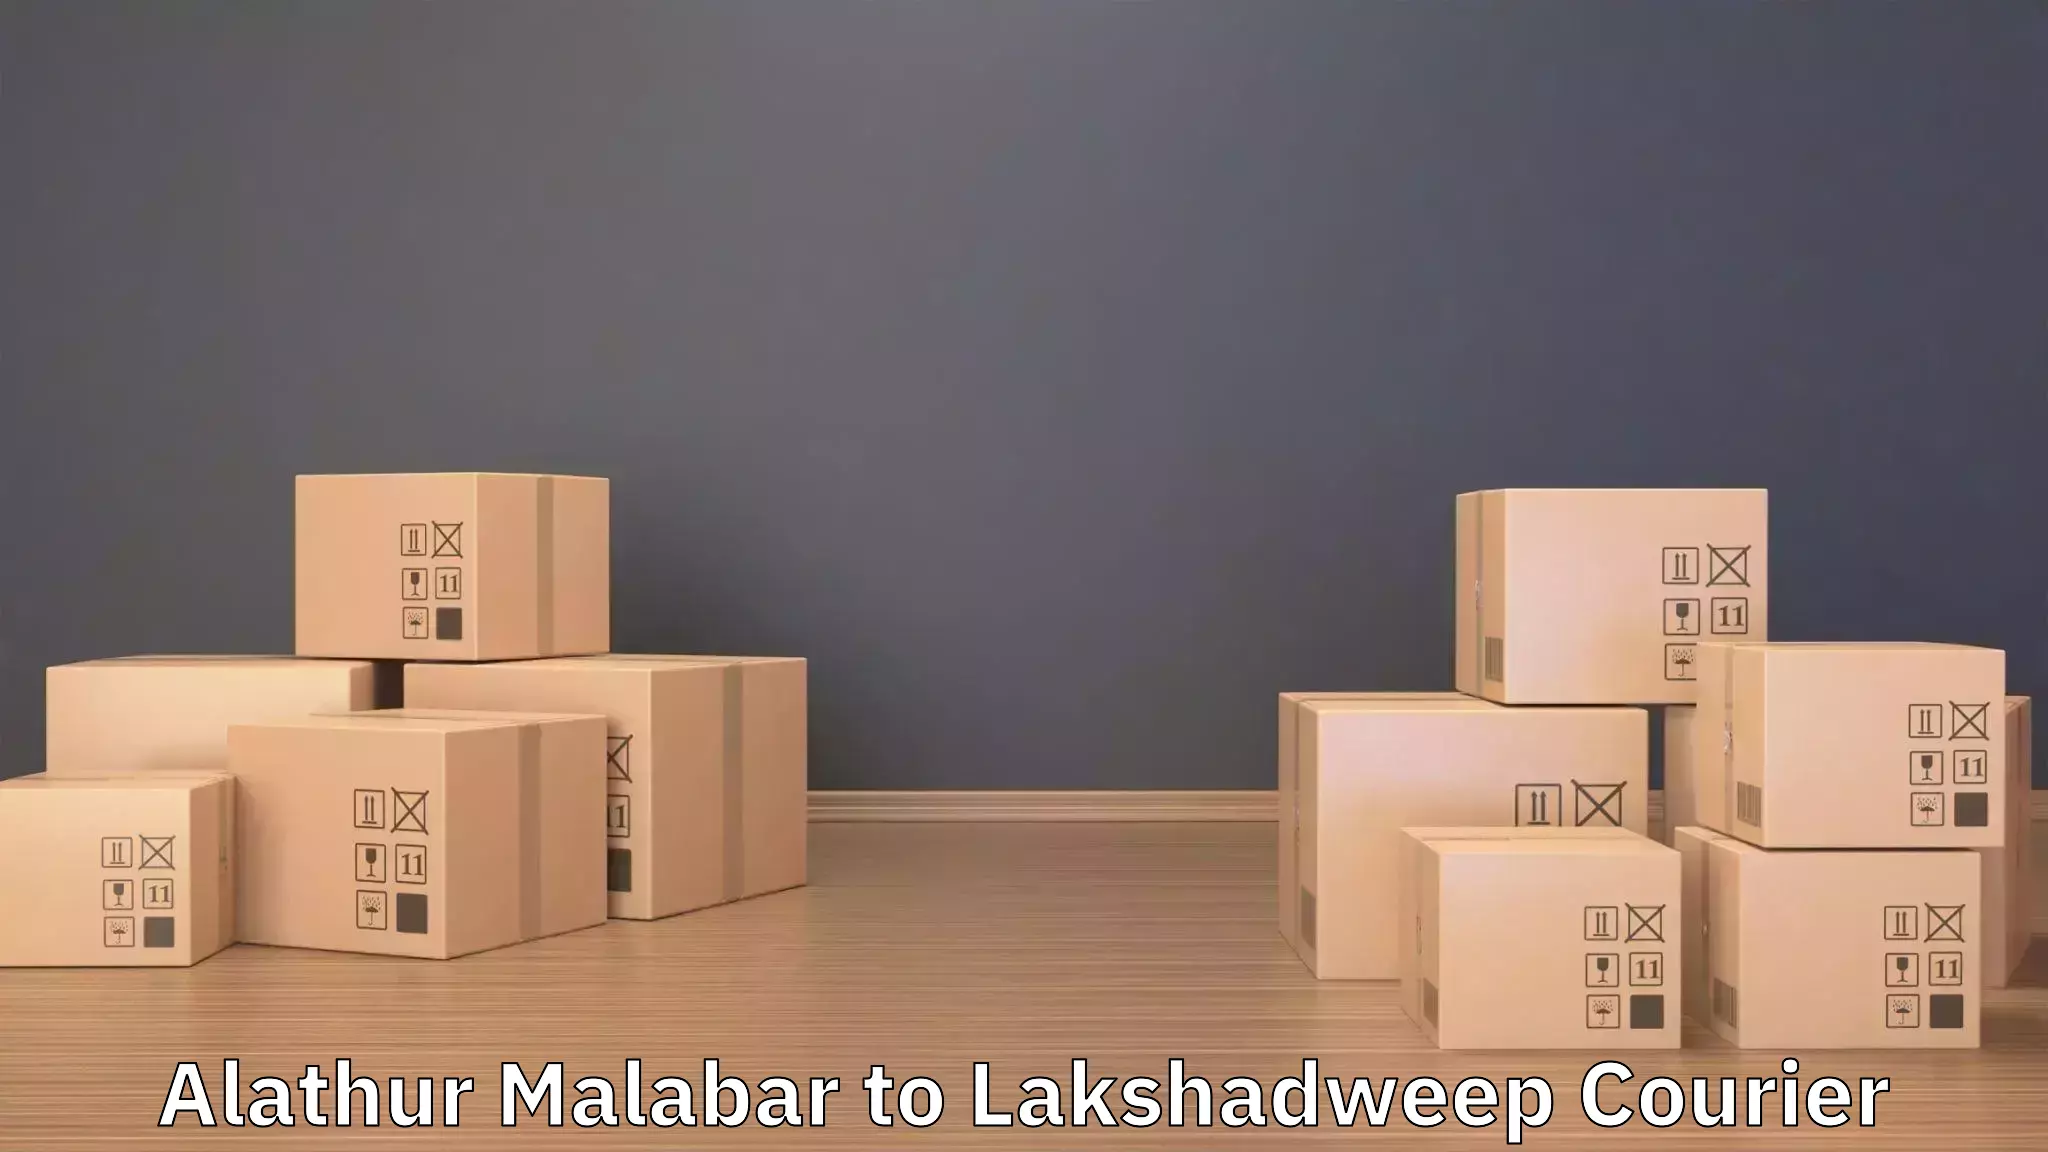 Furniture transport experts Alathur Malabar to Lakshadweep